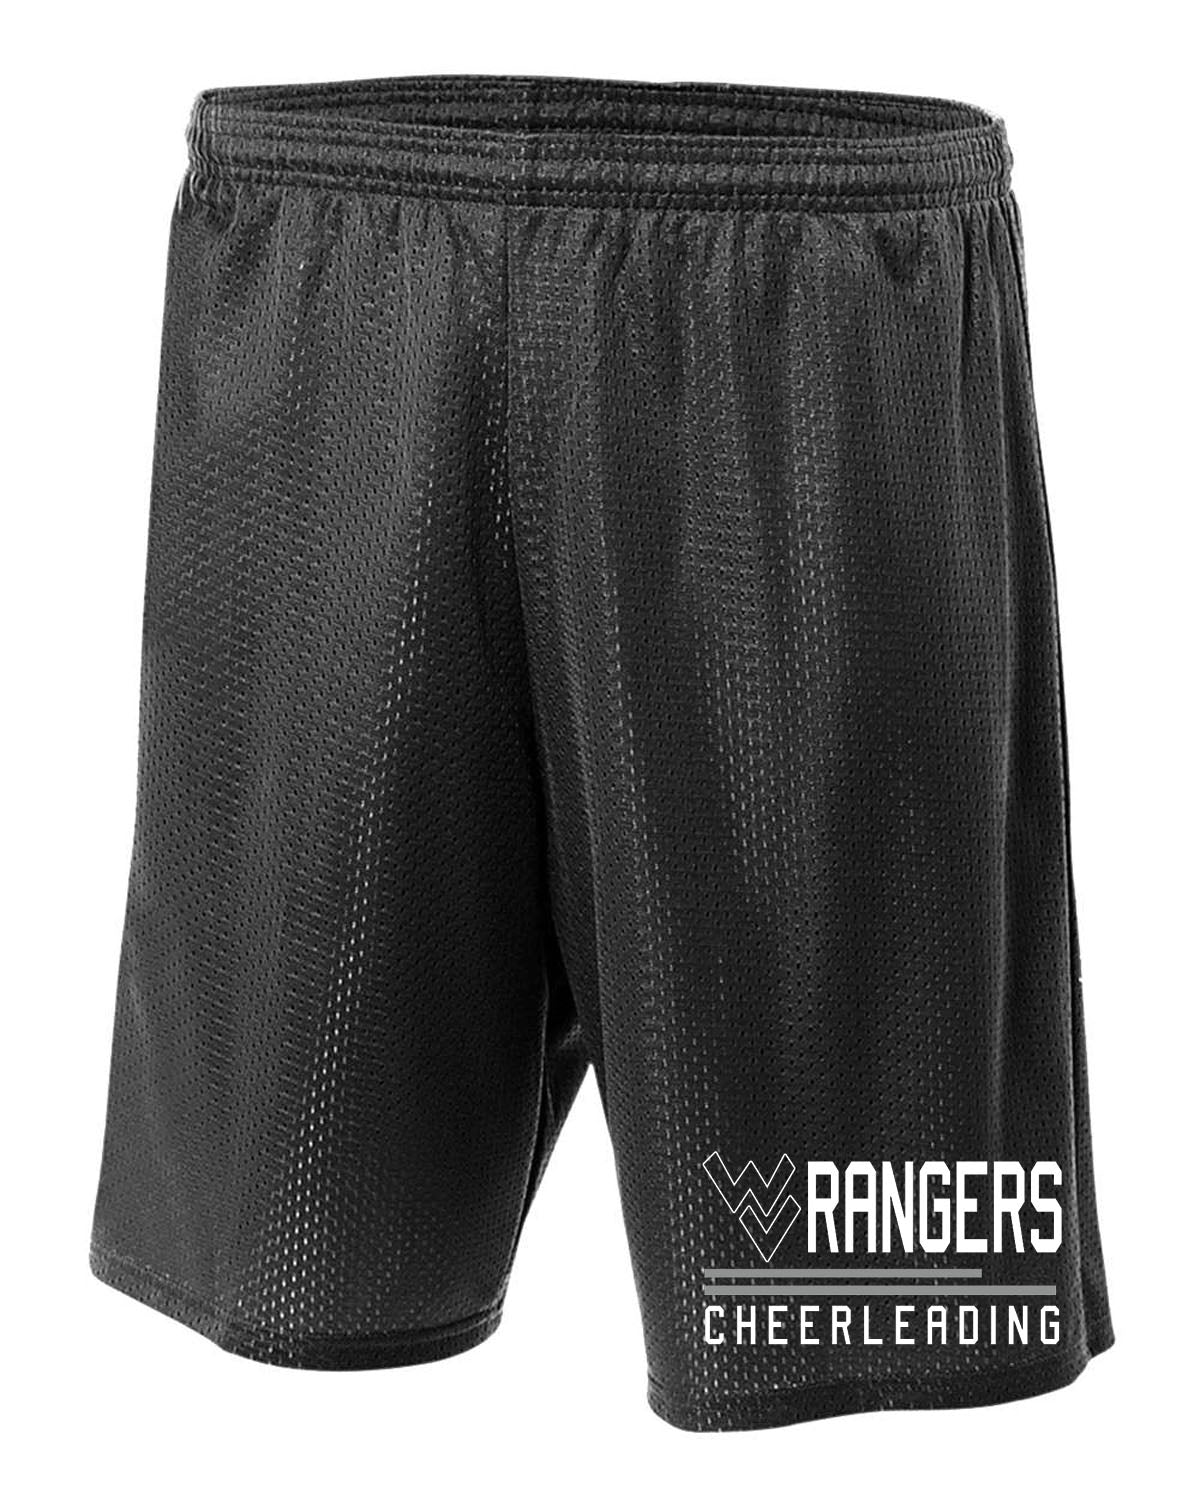 Wallkill Cheer Design 2 Mesh Shorts